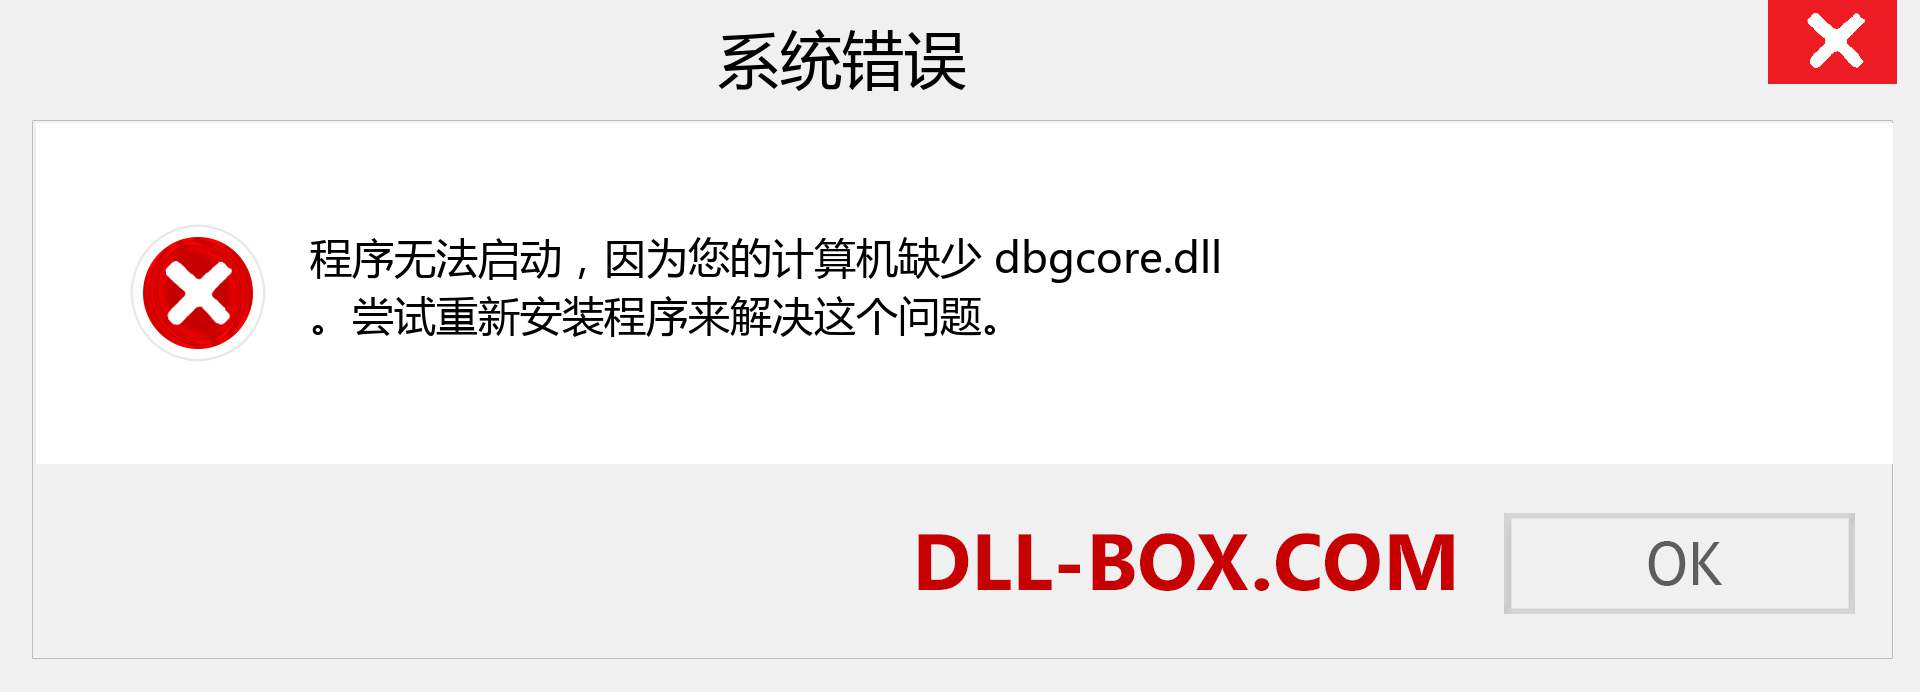 dbgcore.dll 文件丢失？。 适用于 Windows 7、8、10 的下载 - 修复 Windows、照片、图像上的 dbgcore dll 丢失错误